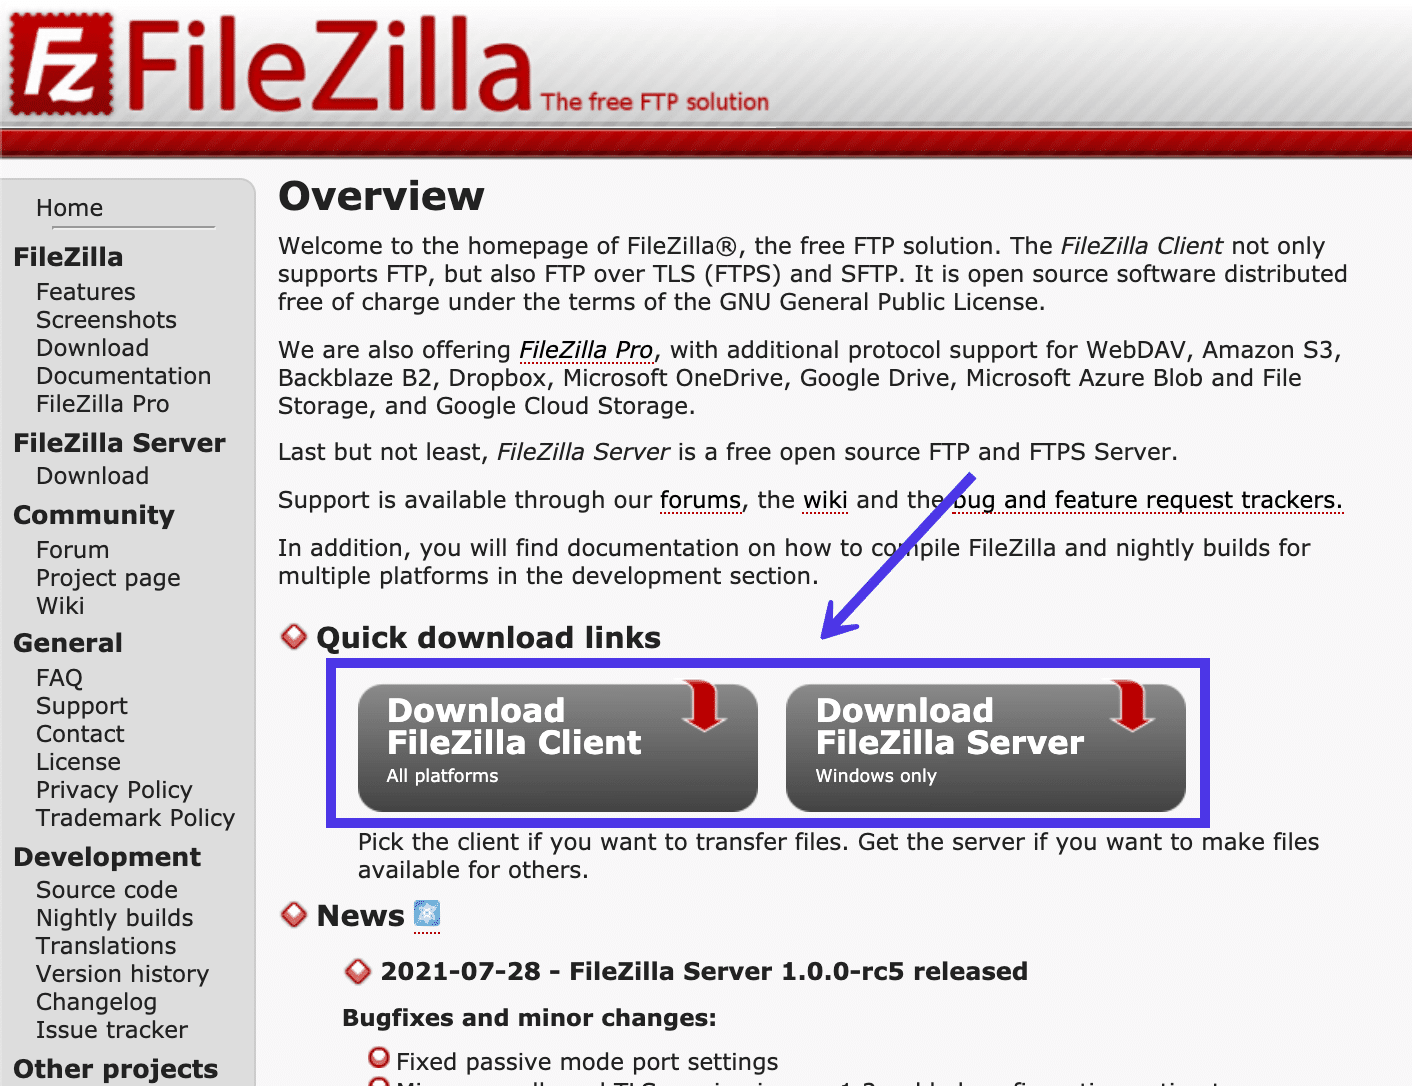 Schermata dell’homepage di FileZilla in cui sono evidenziati i due pulsanti Download per FileZilla Client e FileZilla Server.